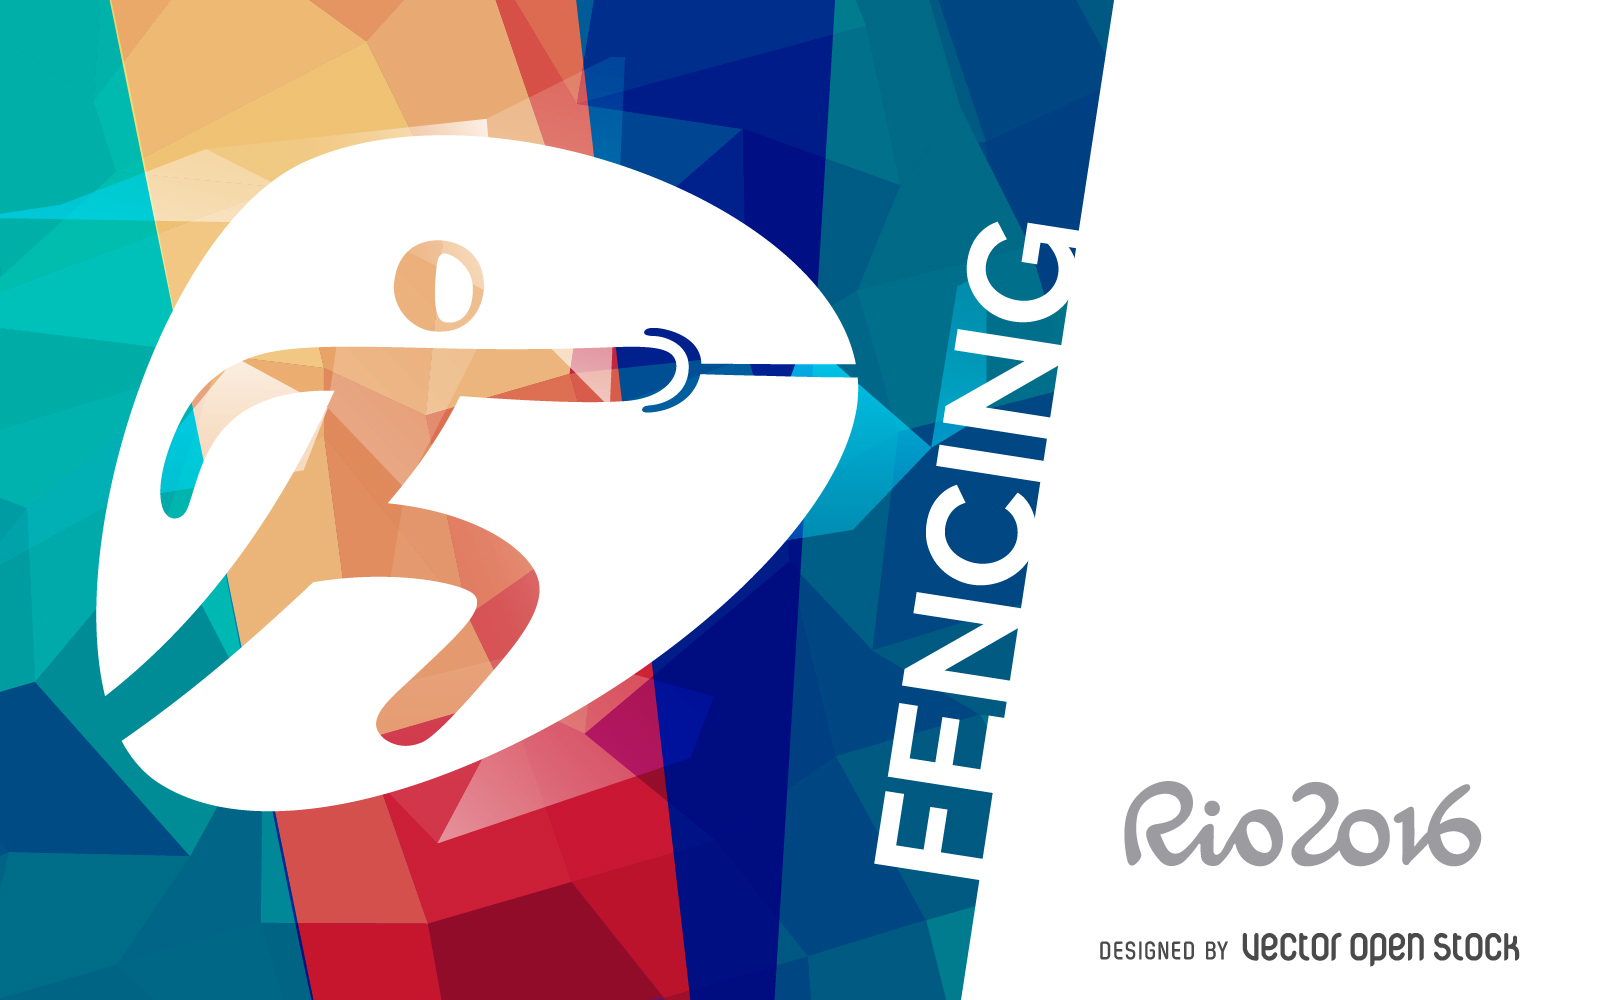 Rio 2016 fencing banner